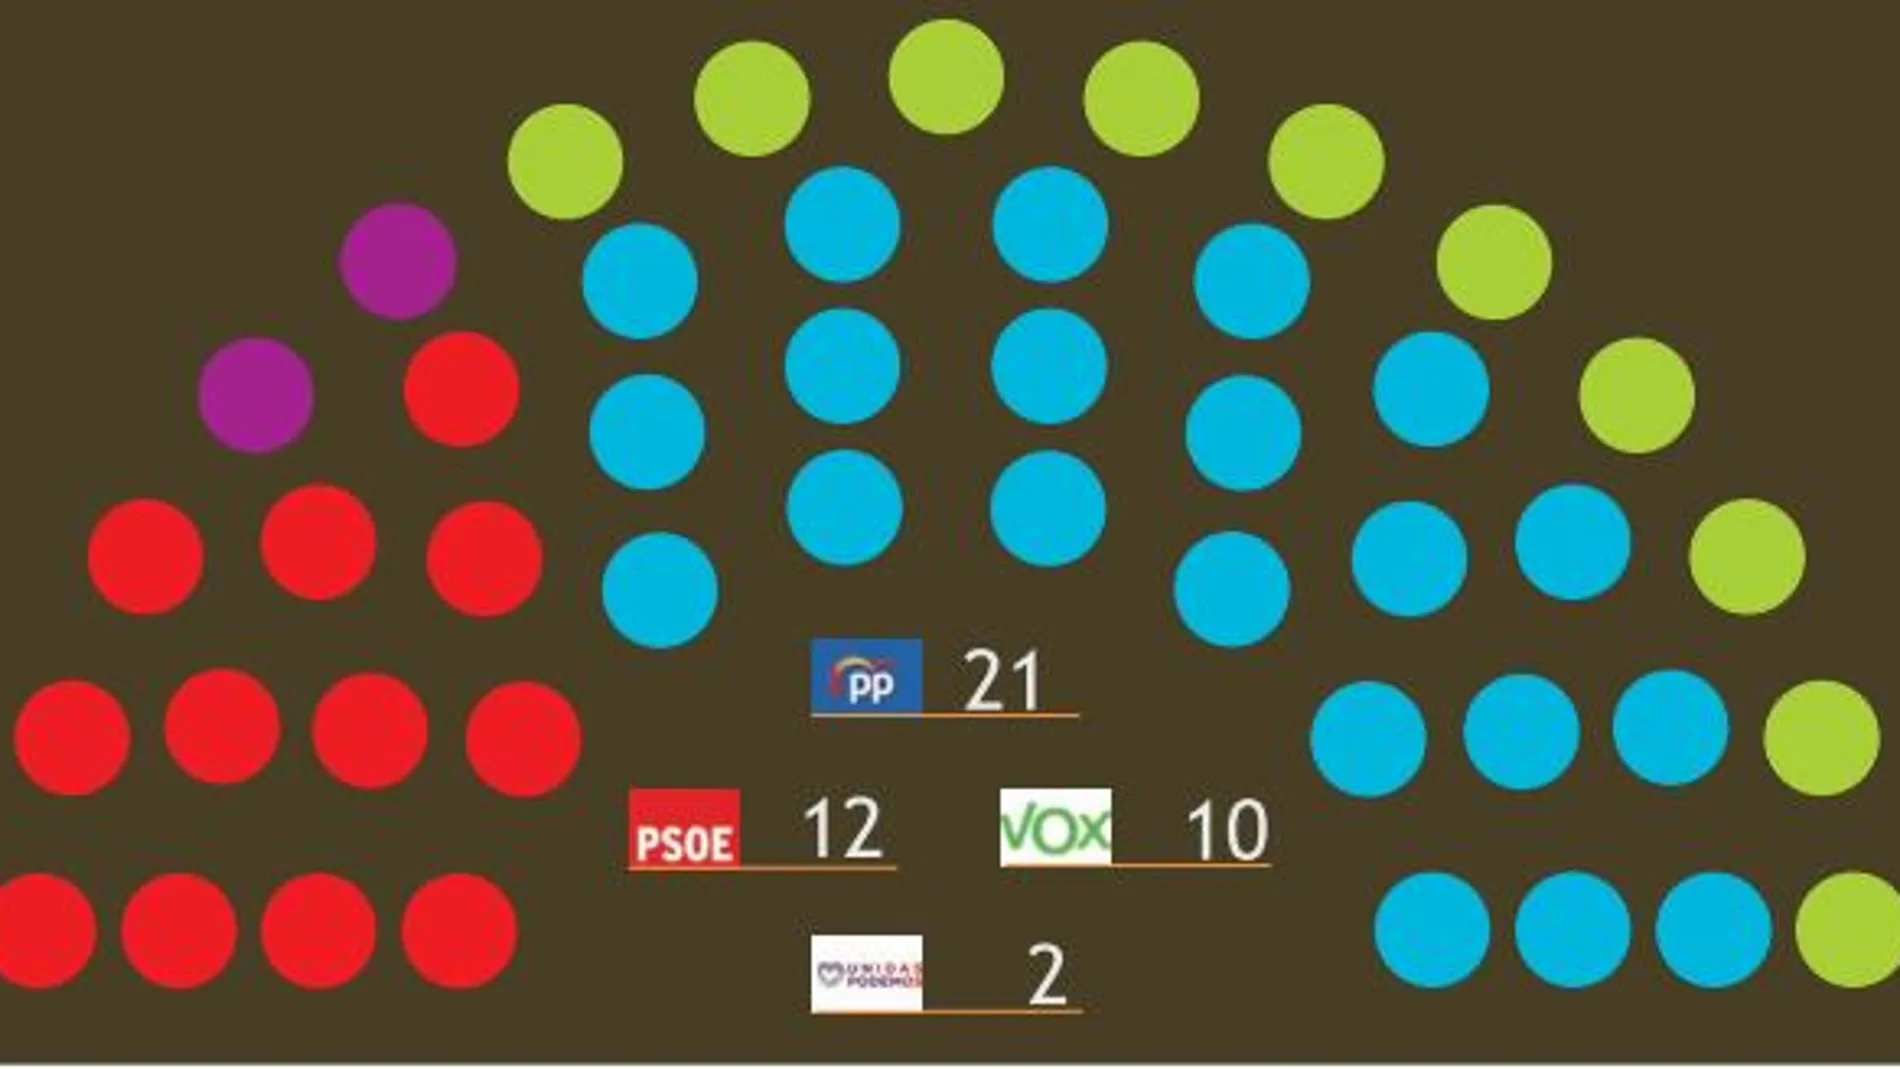 Intención de voto en la Región de Murcia, según el barómetro del CEMOP